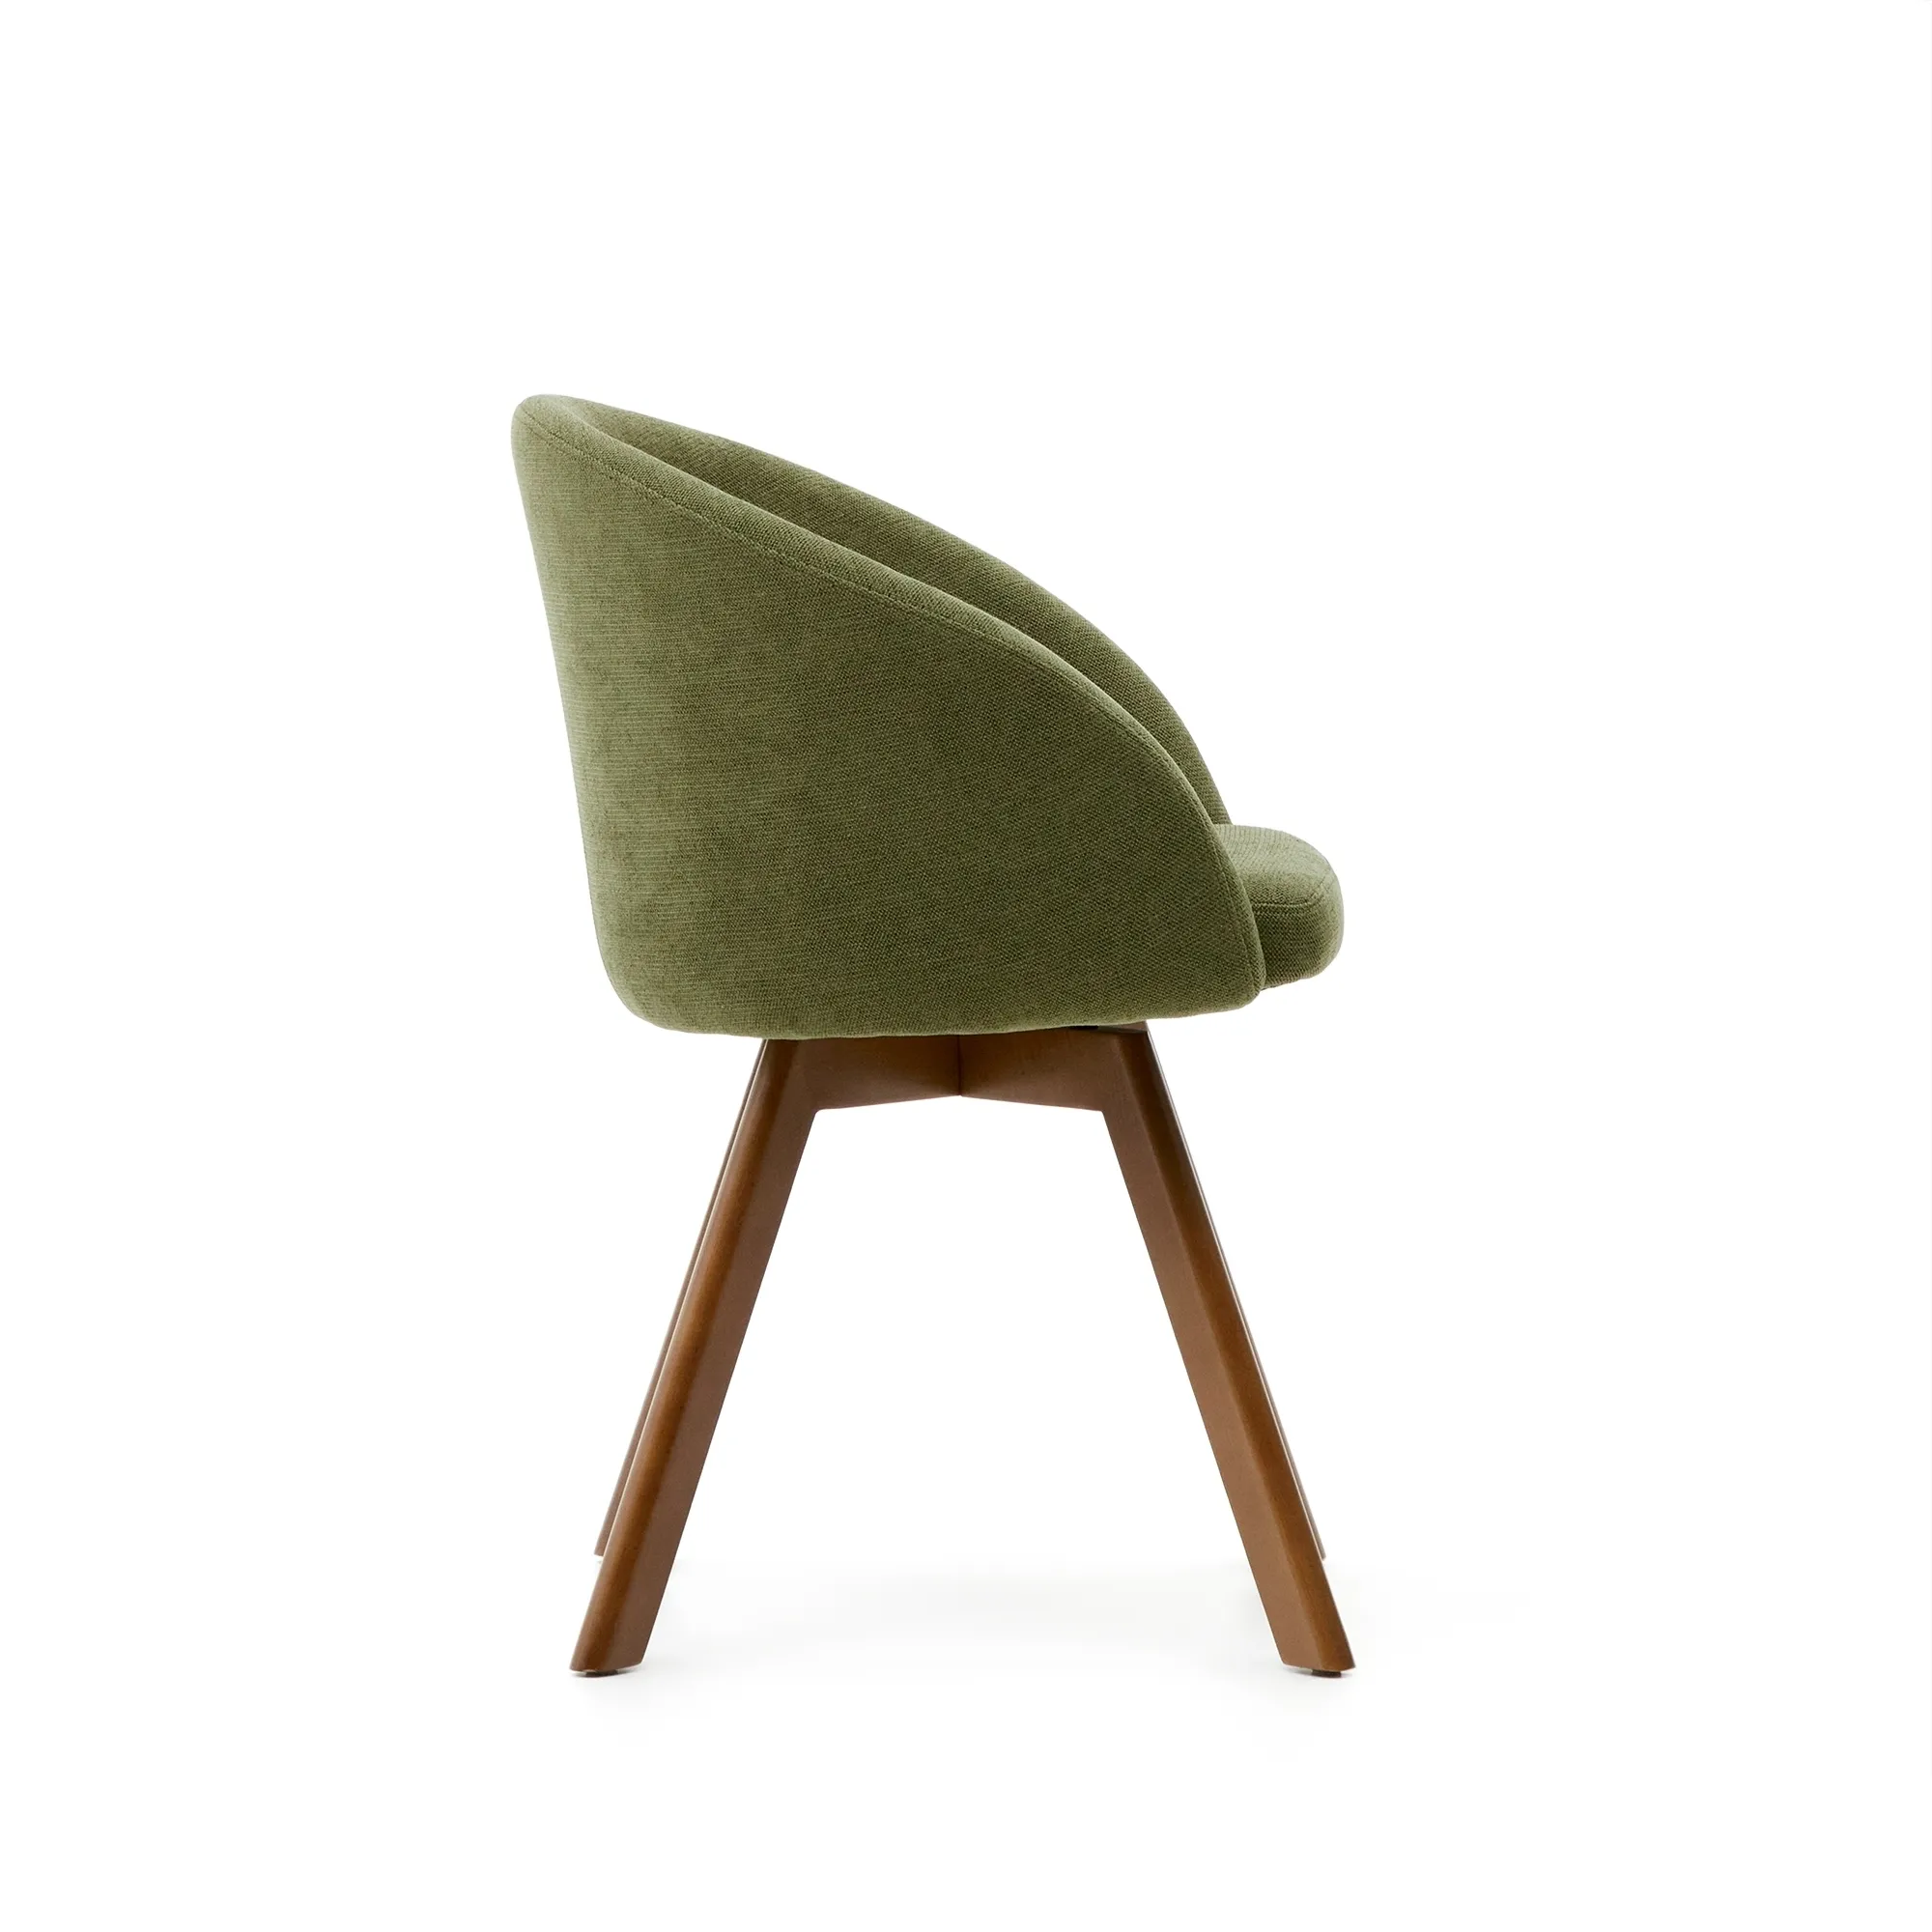 Поворотное кресло La Forma Marvin зеленый шенил ножки из ясеня 181479